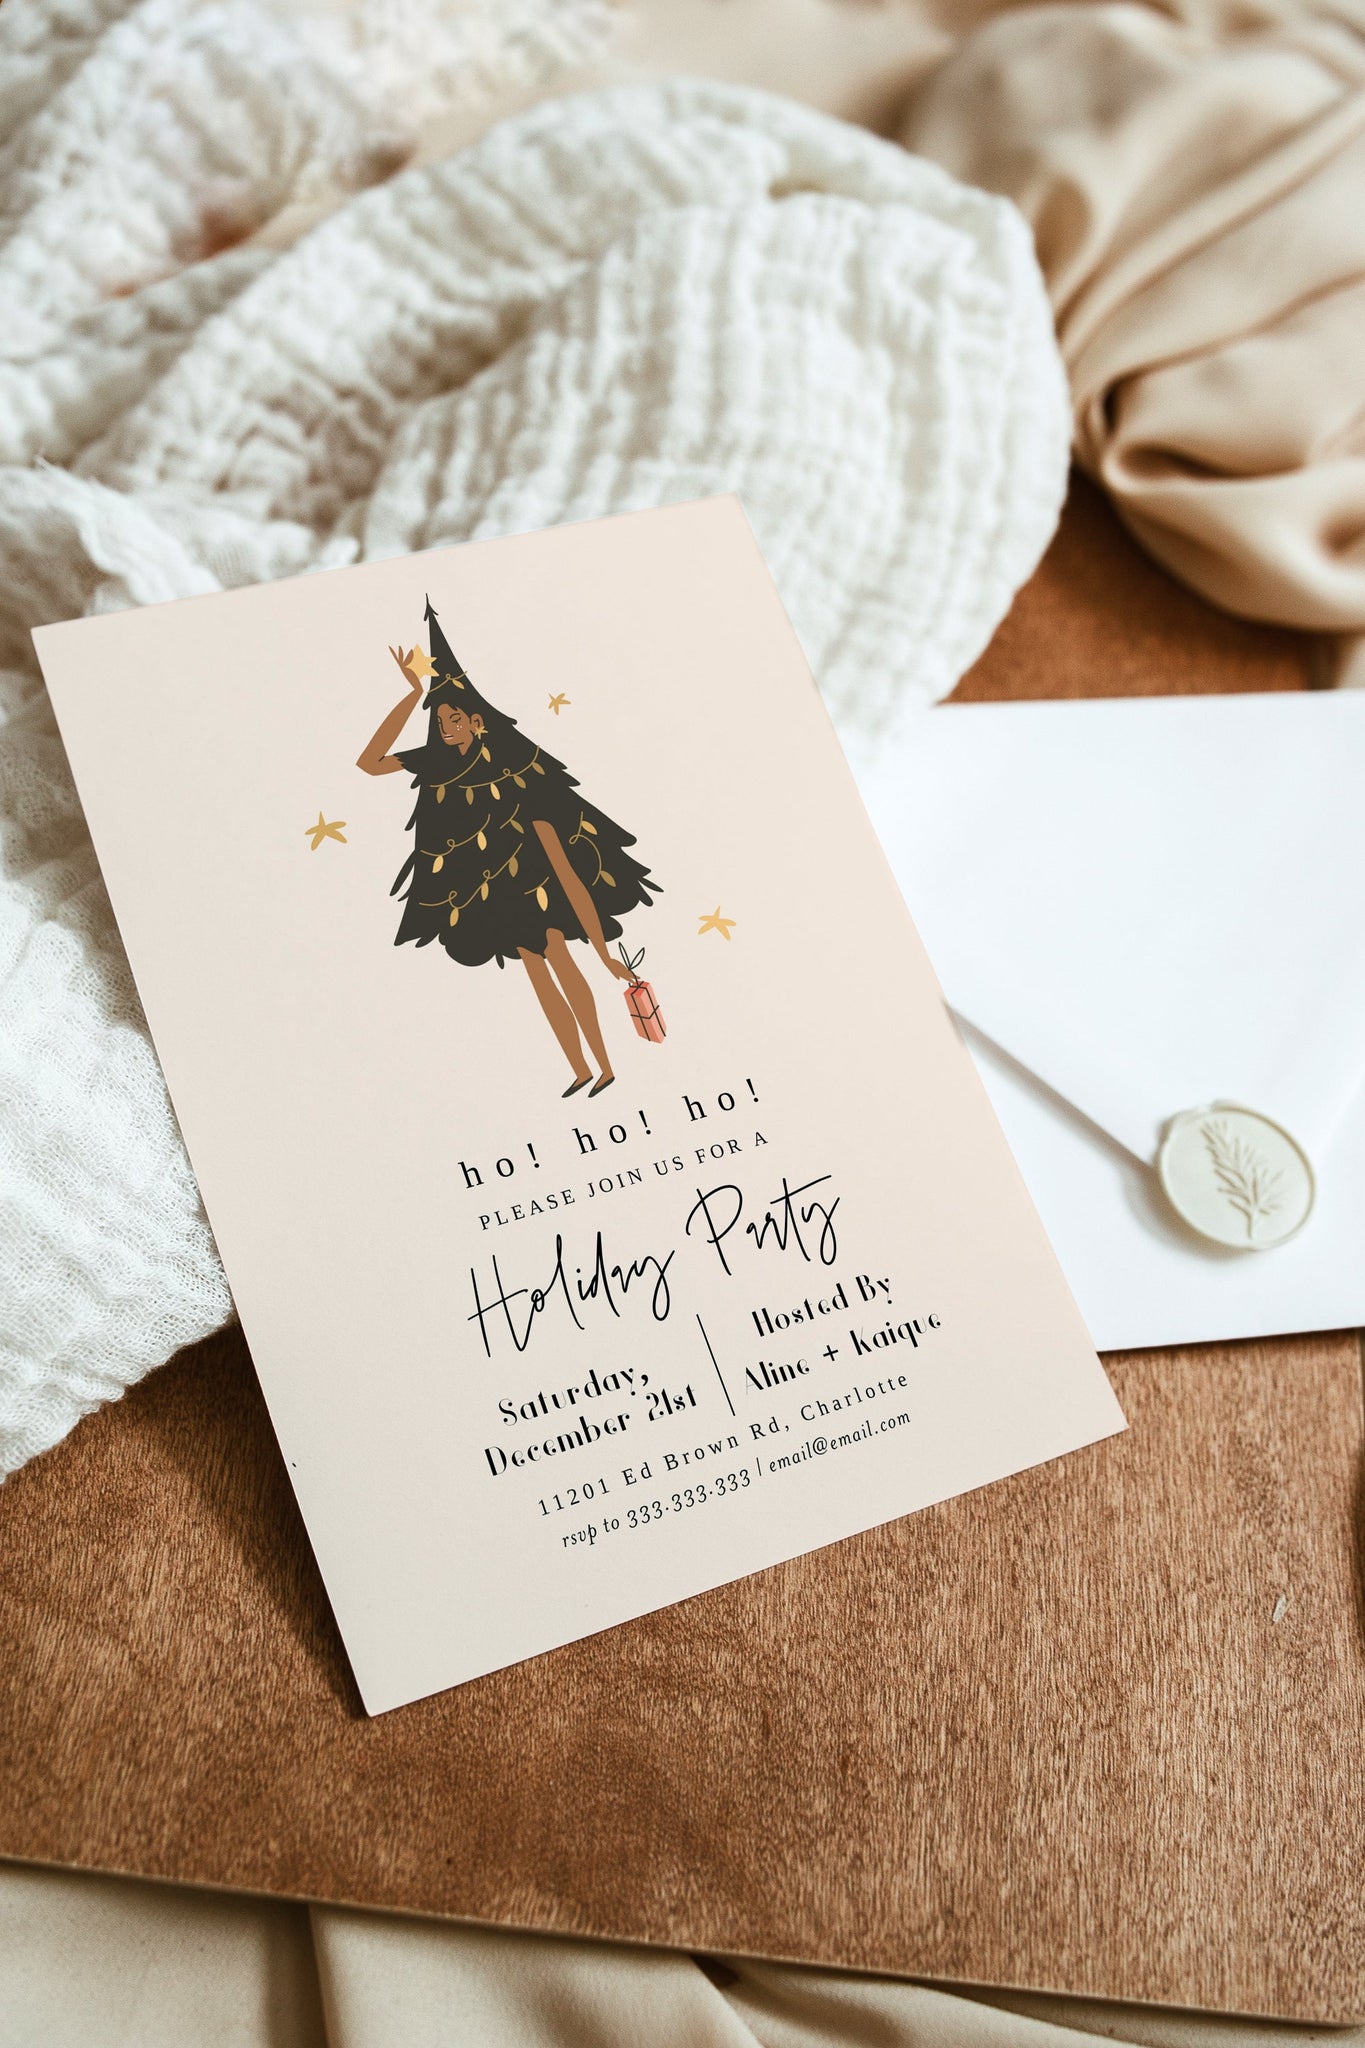 Christmas Party Invitation, Santa Hat, Editable Invitation Template, Printable Christmas Party Invite, Ho Ho Ho Invite, Holiday Party